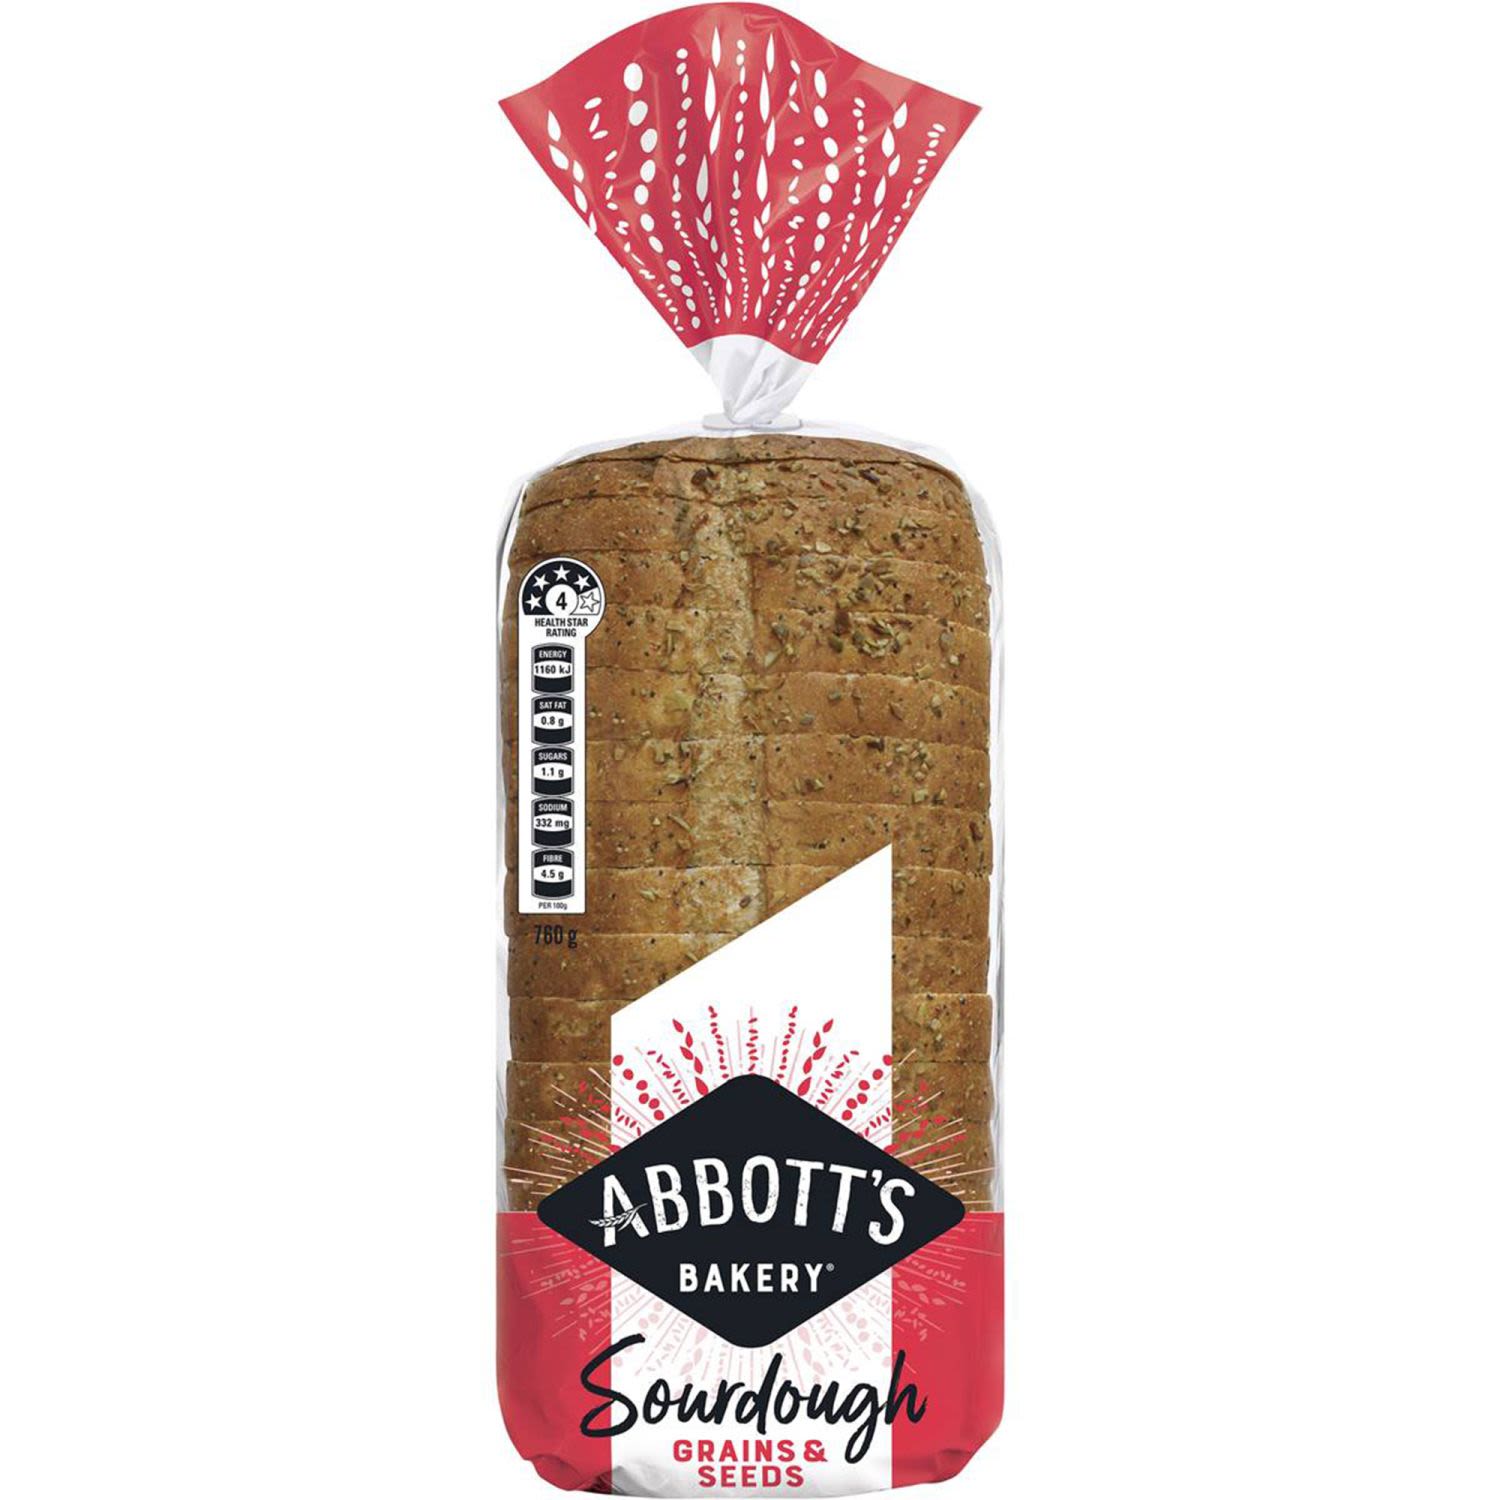 Abbotts Bakery Sourdough Grains & Seeds, 760 Gram